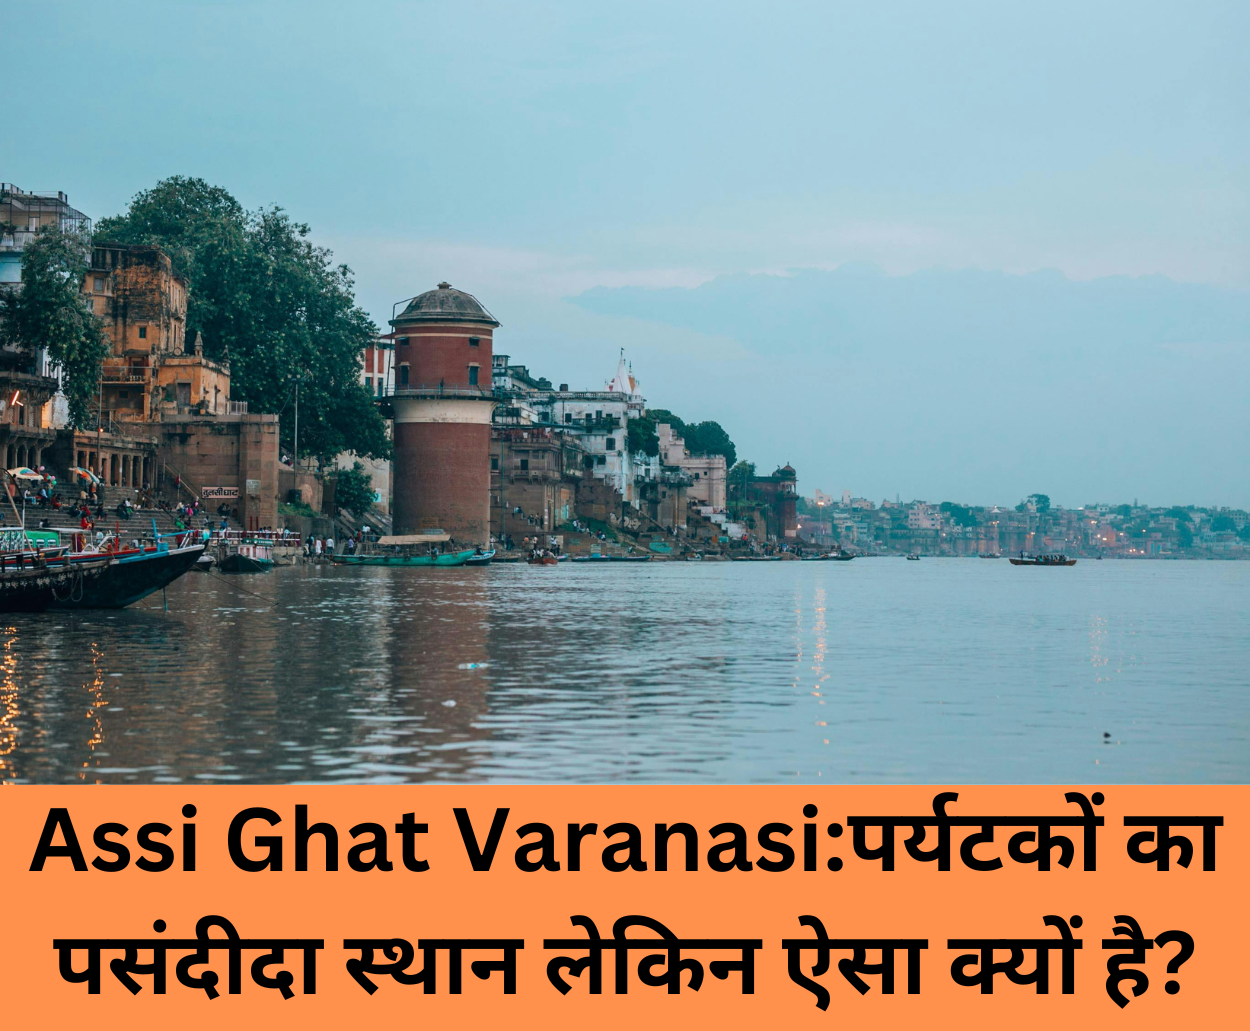 You are currently viewing Assi Ghat Varanasi:पर्यटकों का पसंदीदा स्थान लेकिन ऐसा क्यों है?